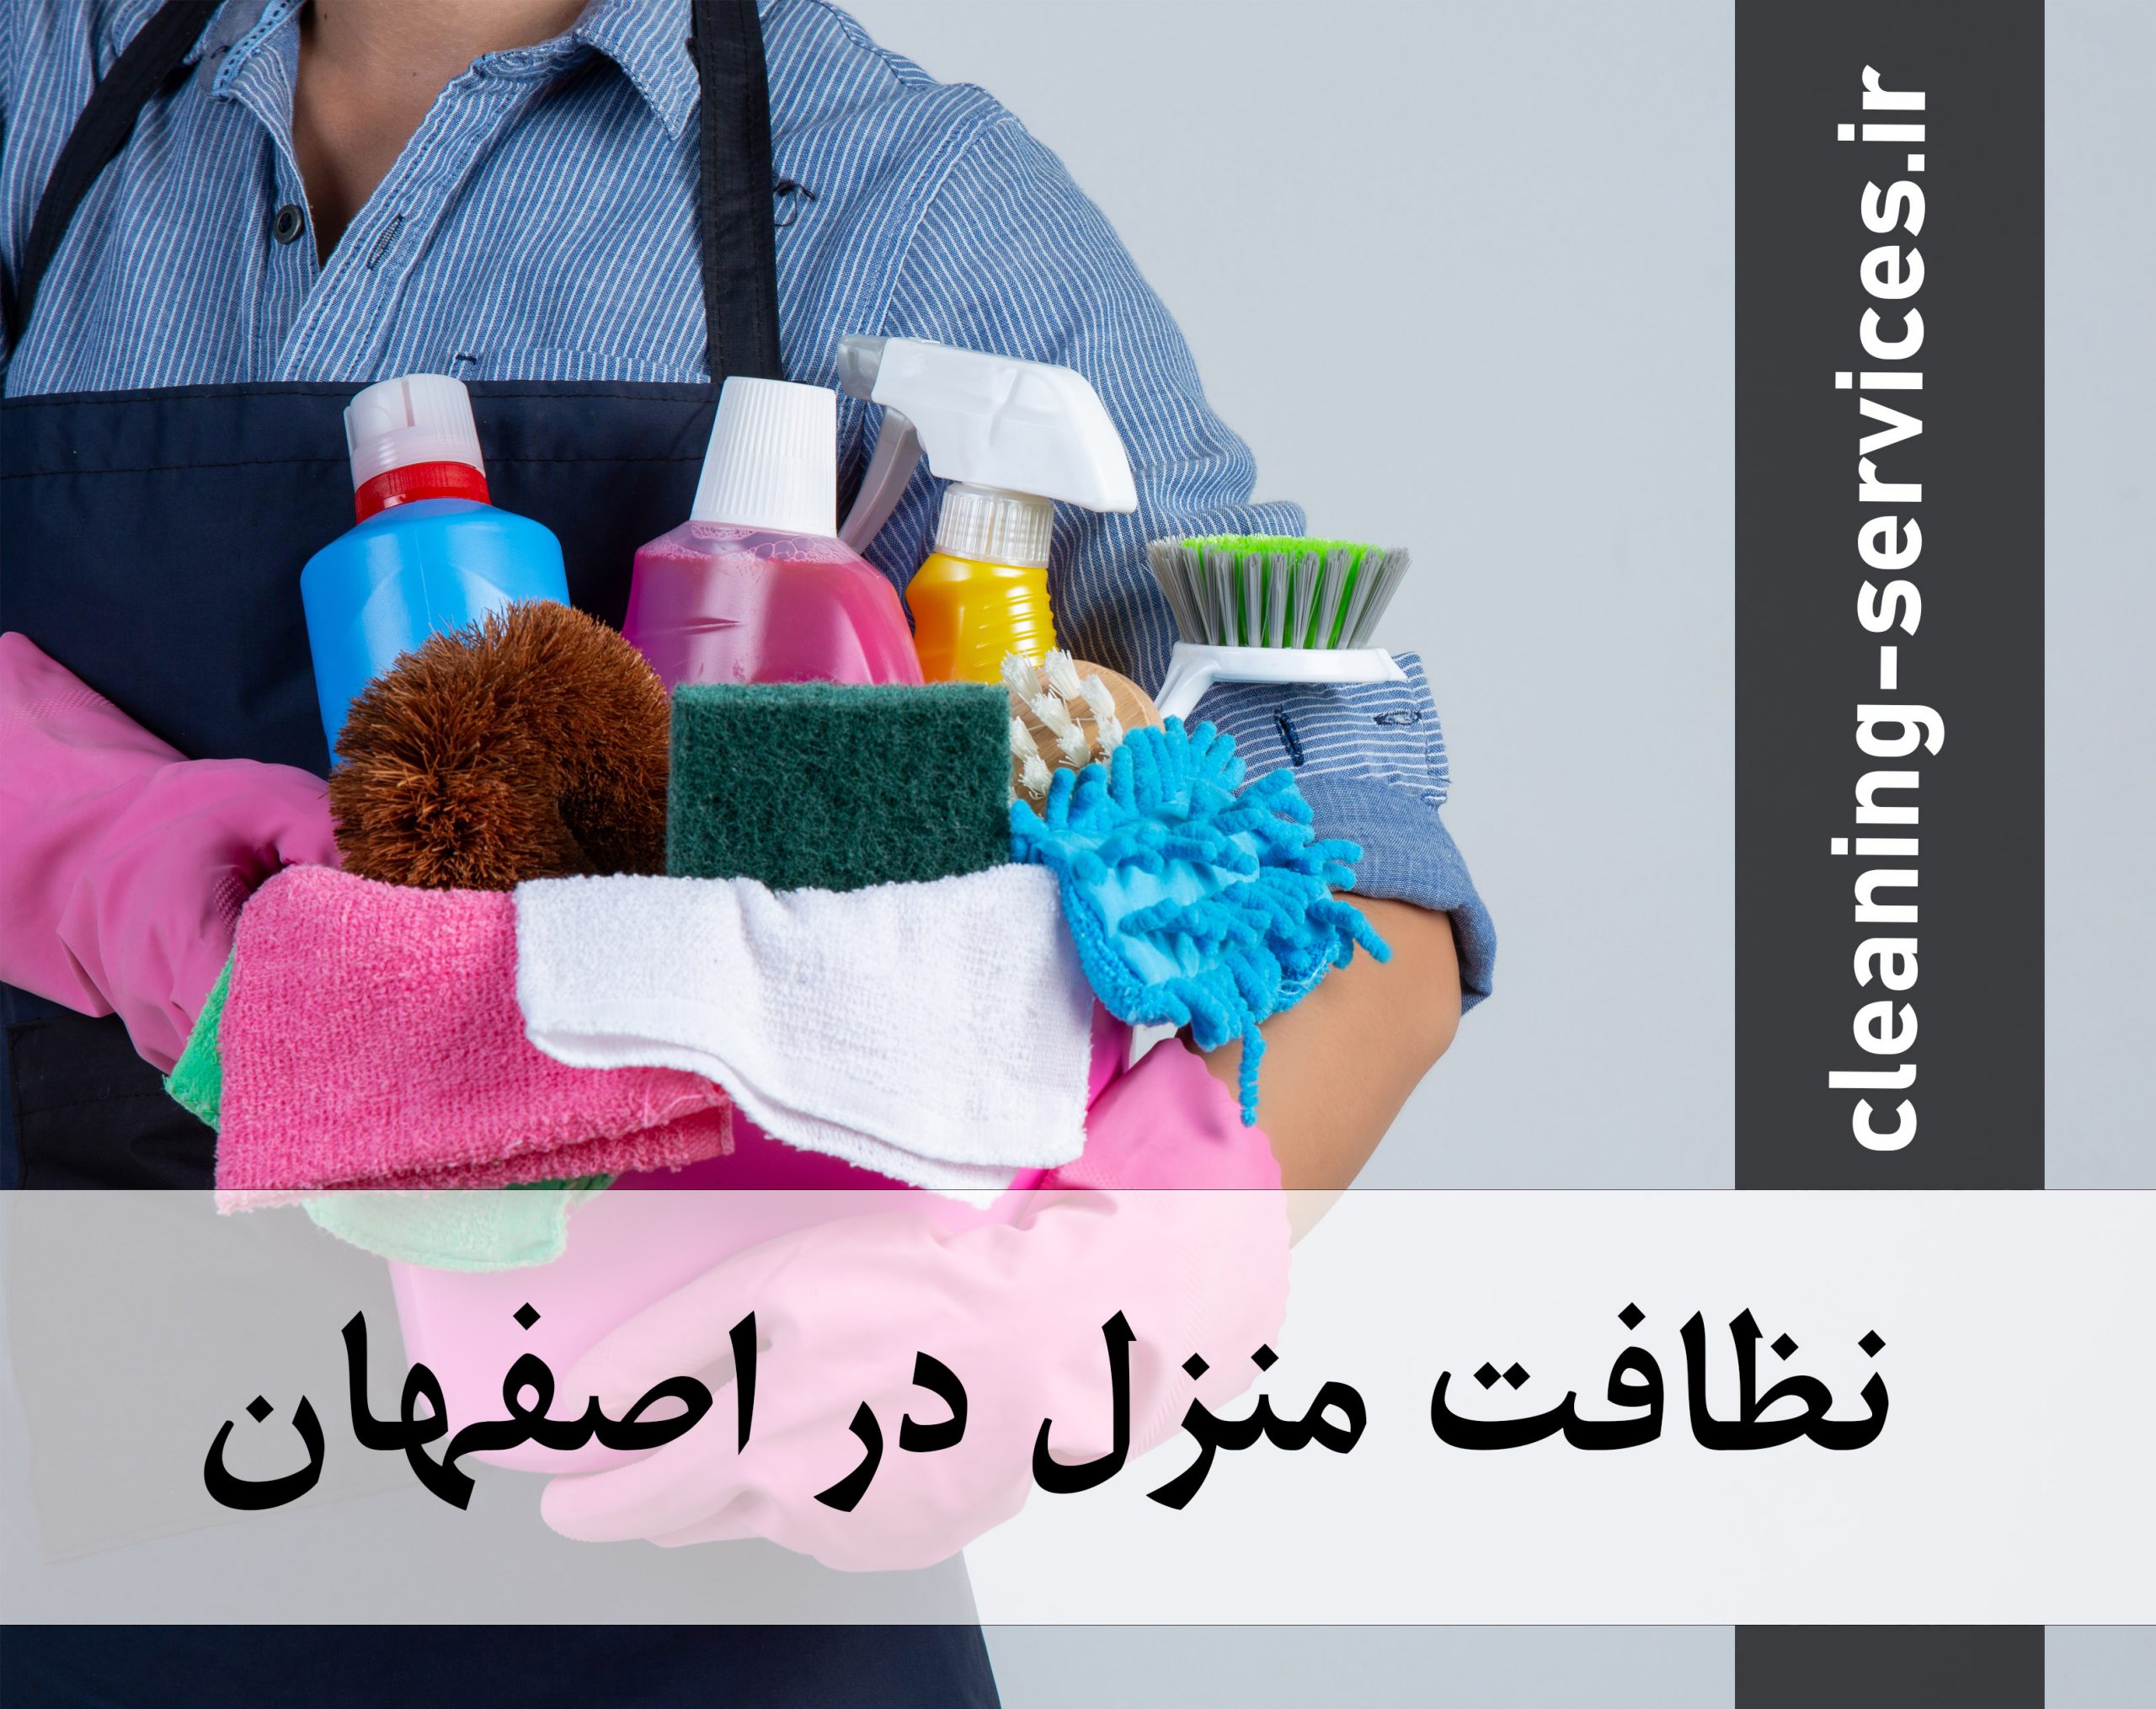 نظافت منزل در اصفهان